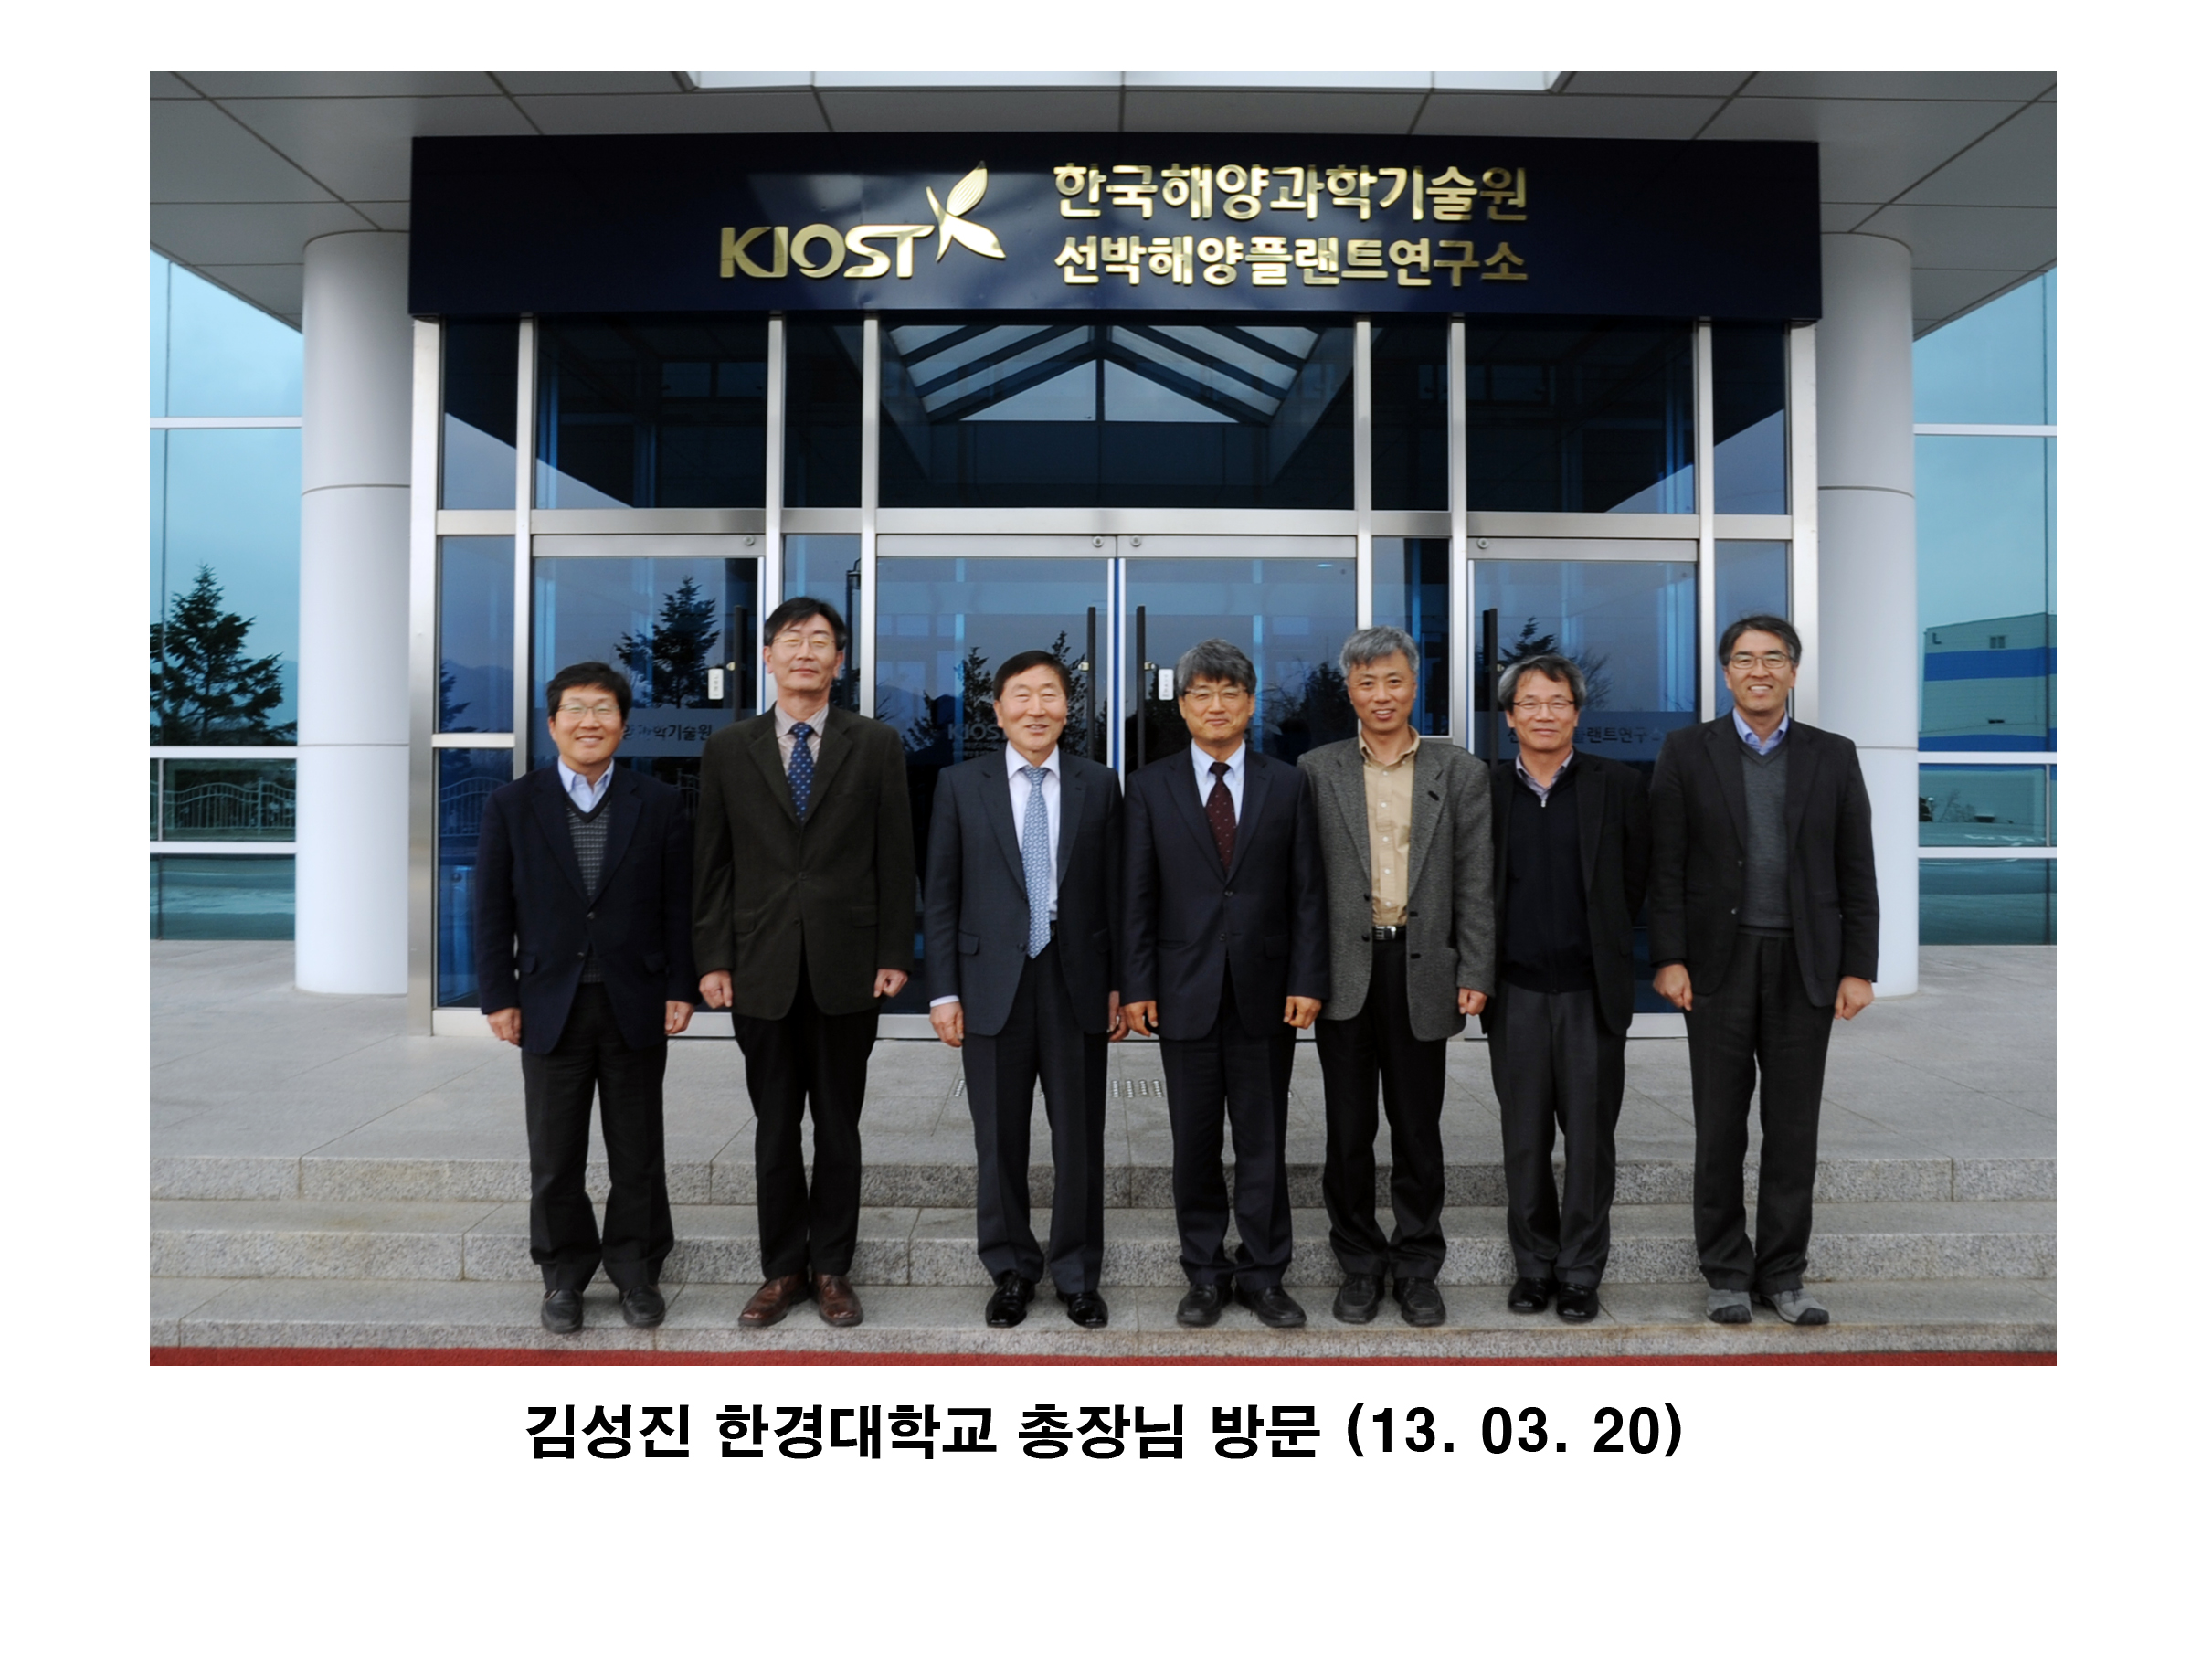 김성진 한경대학교 총장님 방문